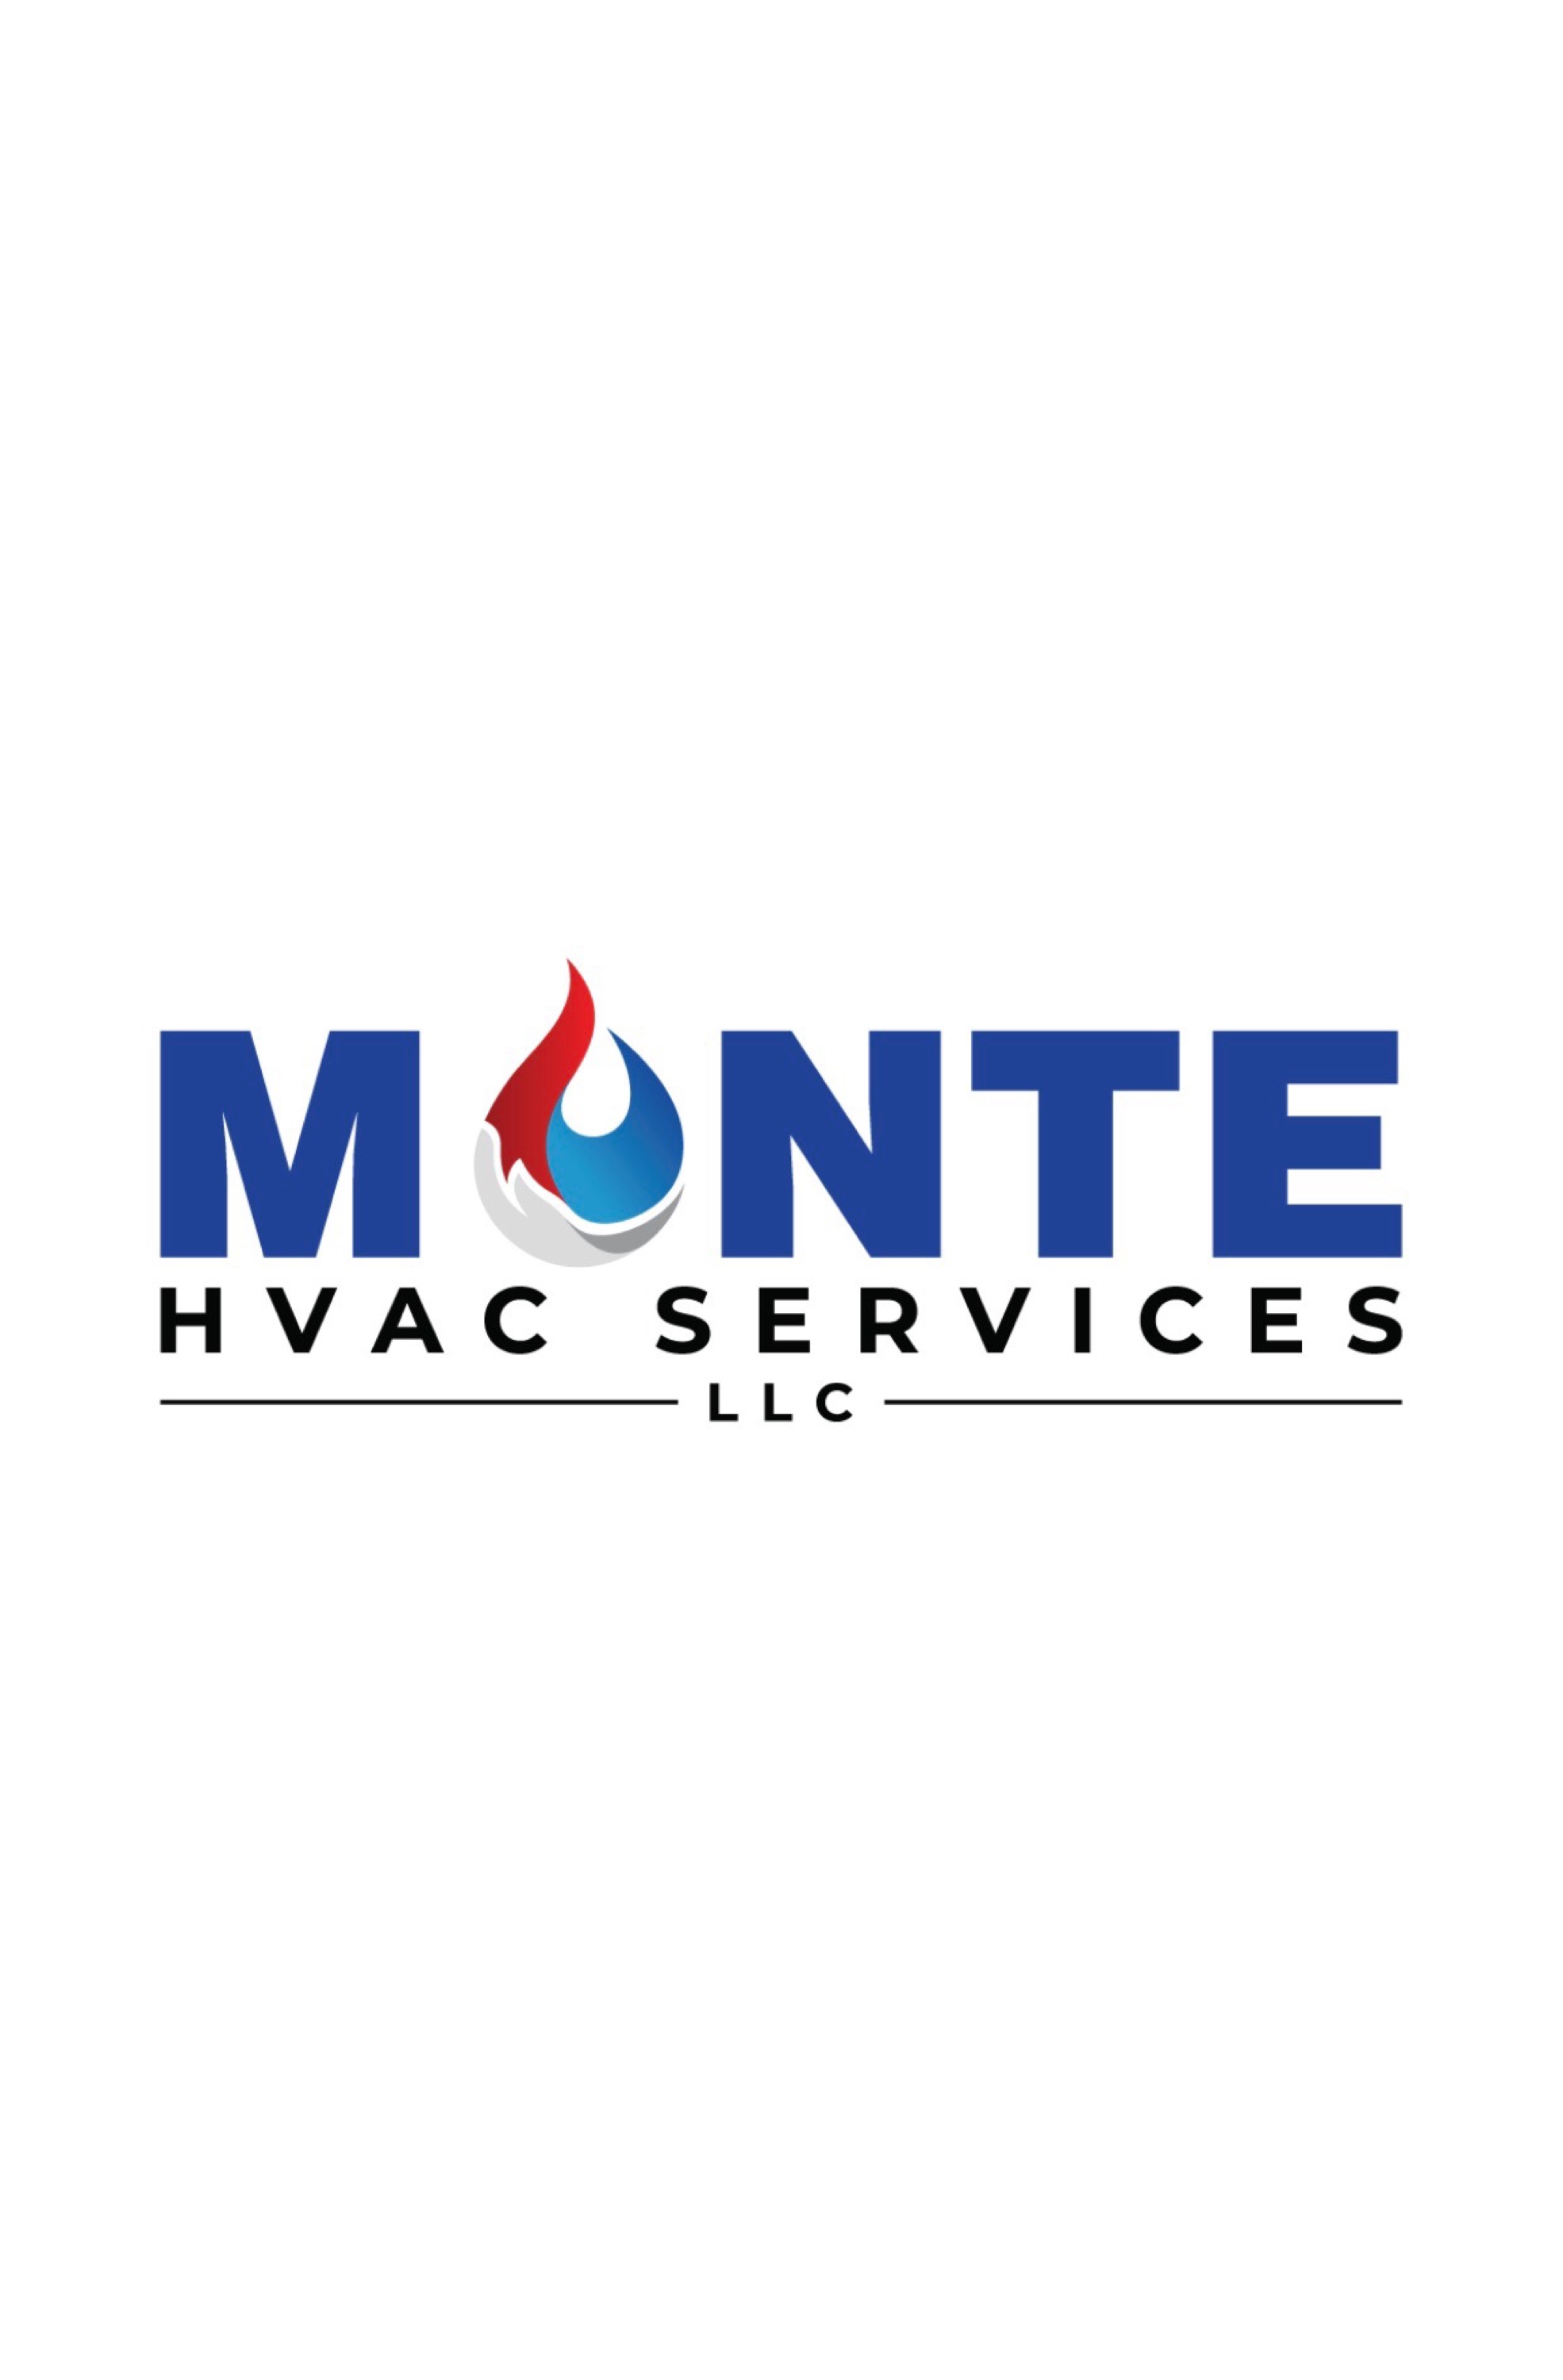 Monte HVAC Services LLC Logo